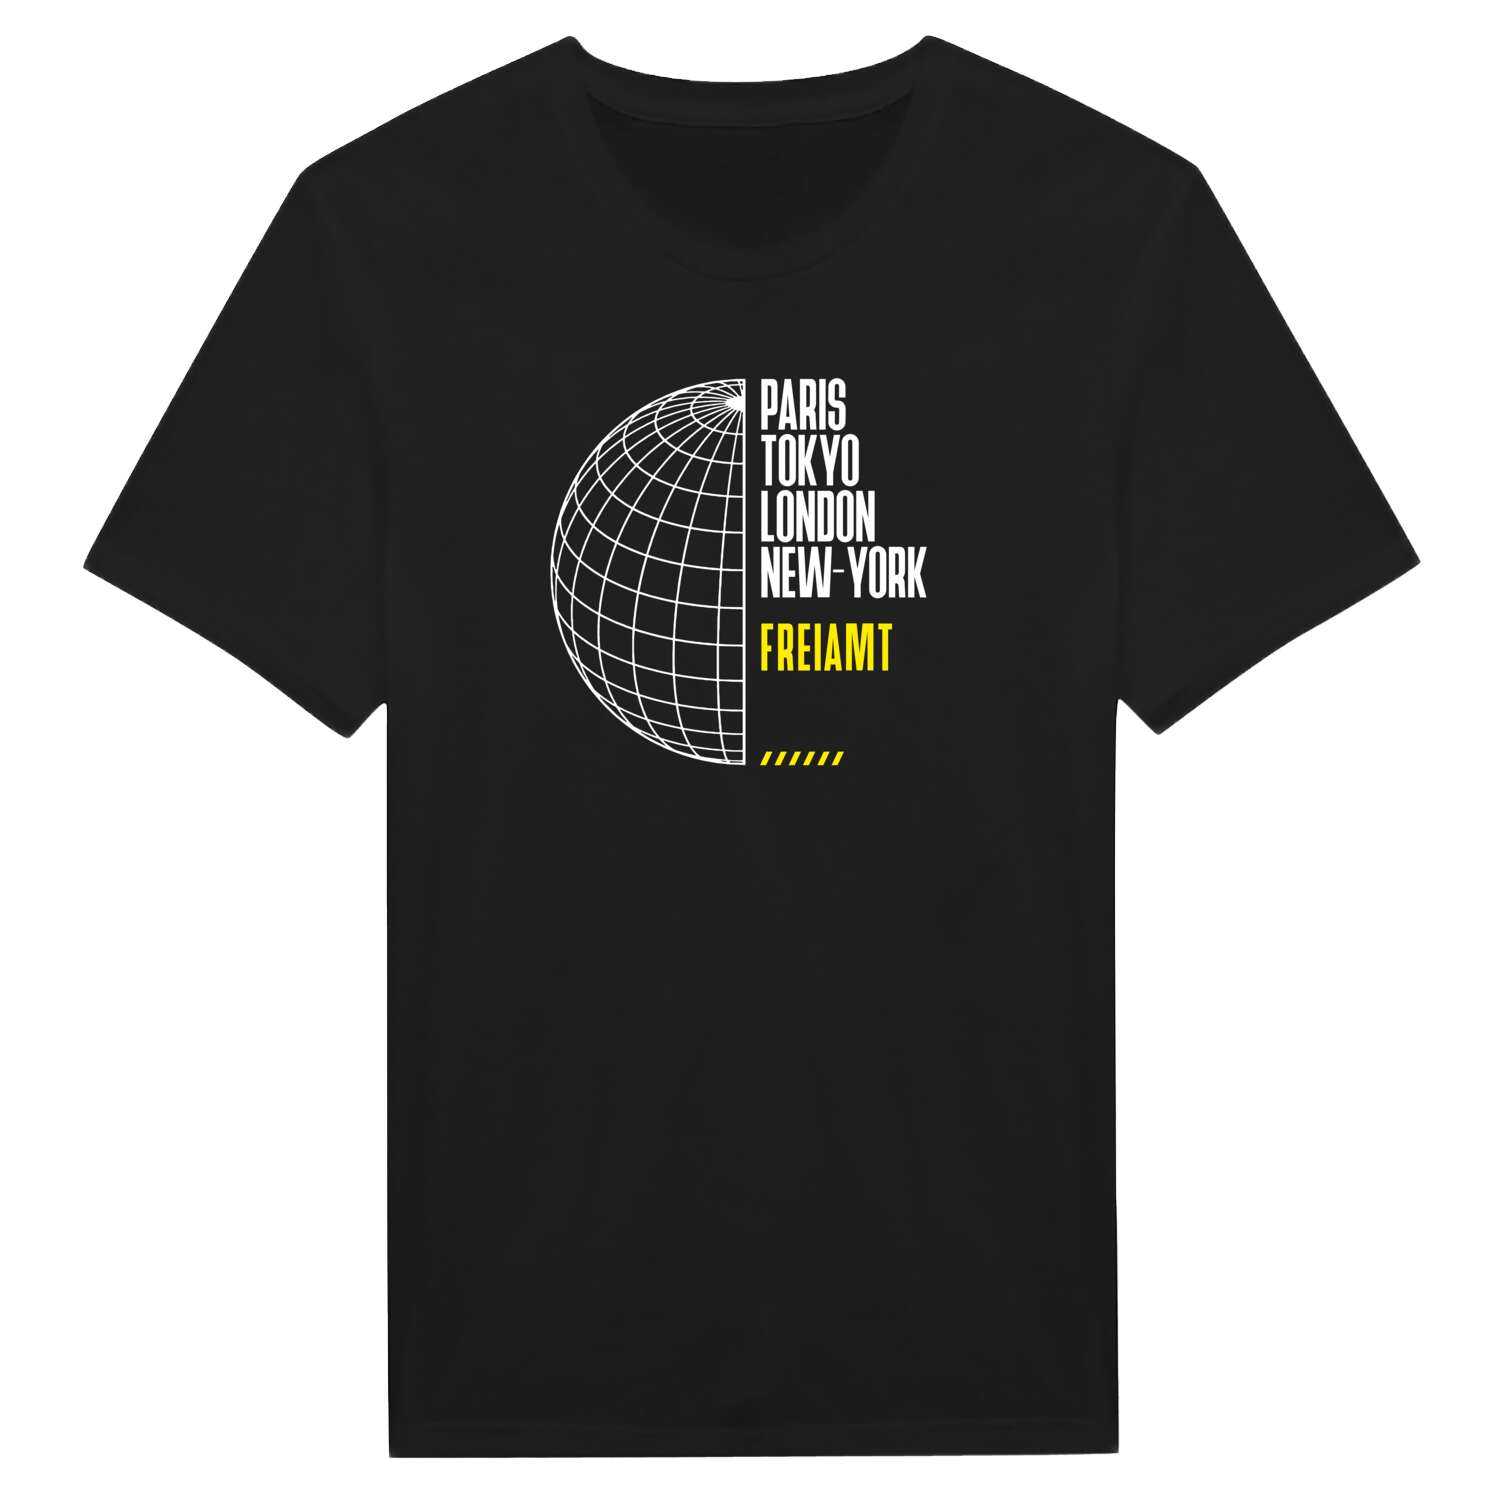 Freiamt T-Shirt »Paris Tokyo London«